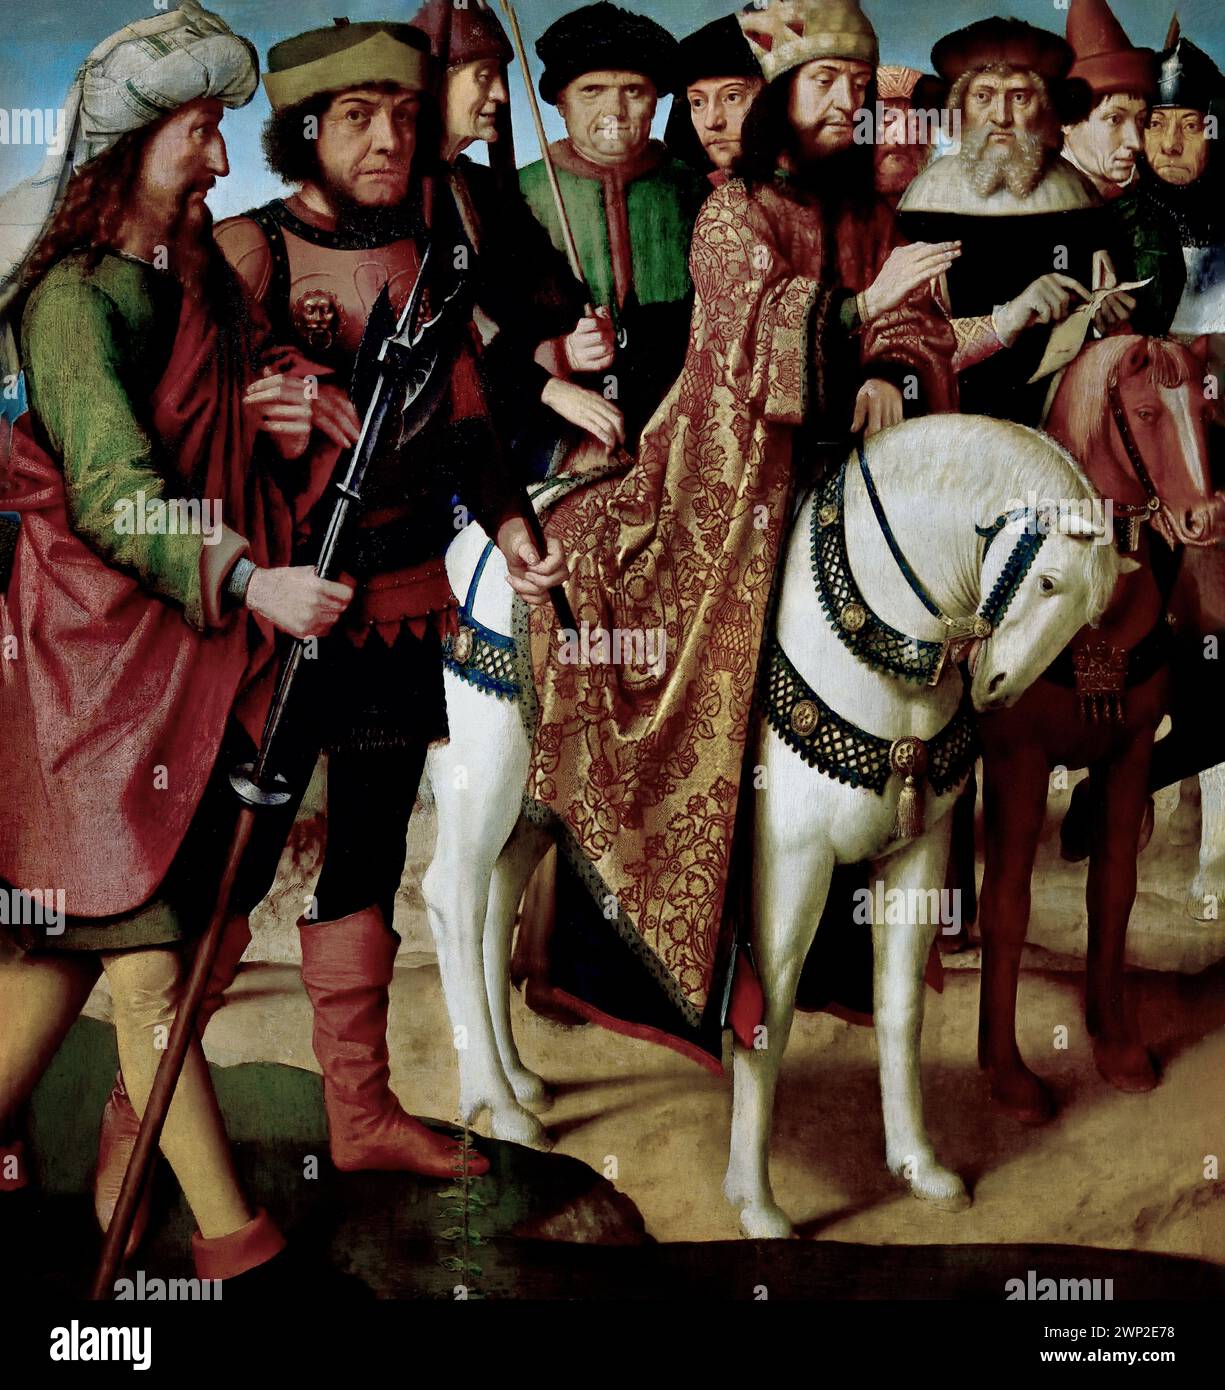 Pilatus und die Hohenpriester 1480-1485 von Gerard David 1480-1485 Königliches Museum der Schönen Künste, Antwerpen, Belgien, Belgien. Stockfoto